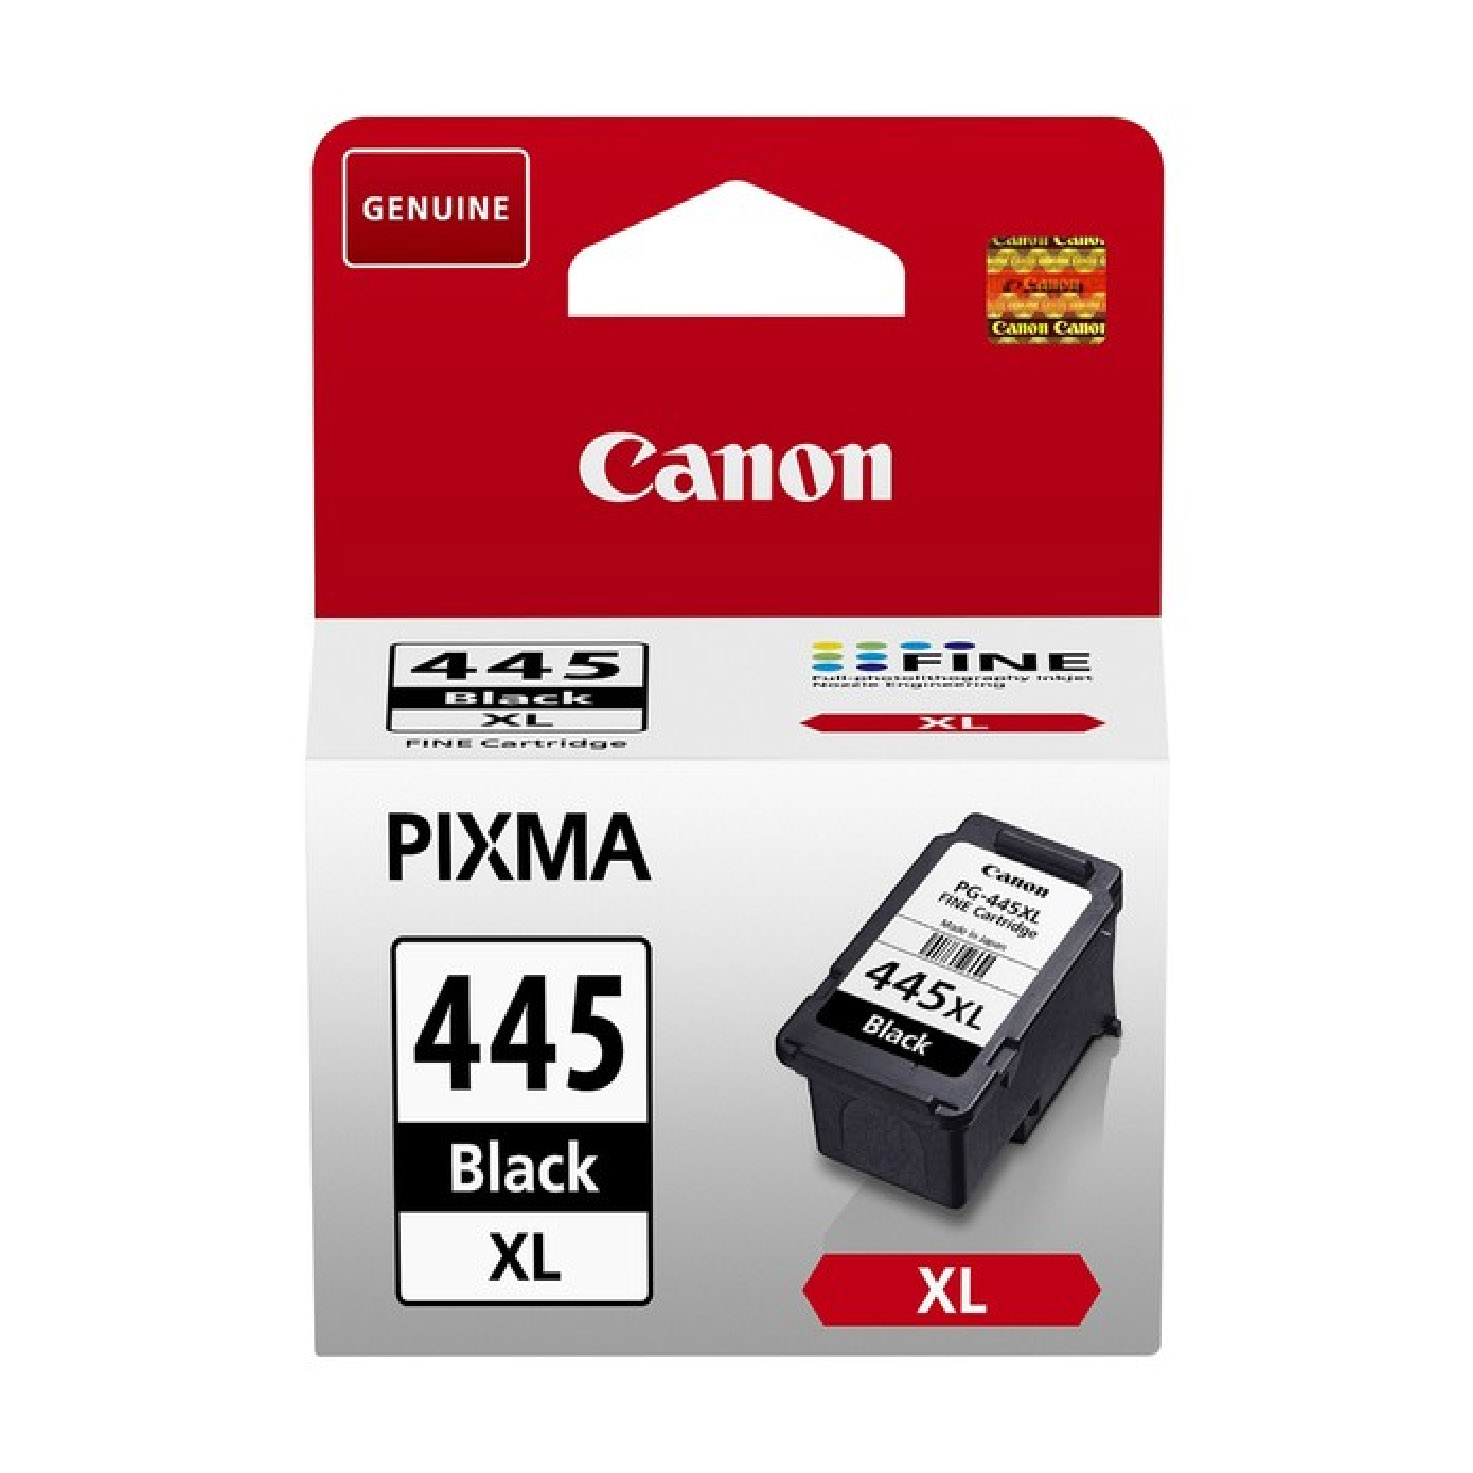 Canon pixma 445. Картридж Canon PG 445 изнутри. Картридж Canon PG-445 черный, № 445 оригинальный. Canon PG-445xl разобранный. ￼ ￼ хиты недели −58% картридж для Canon PG-445xl Black.